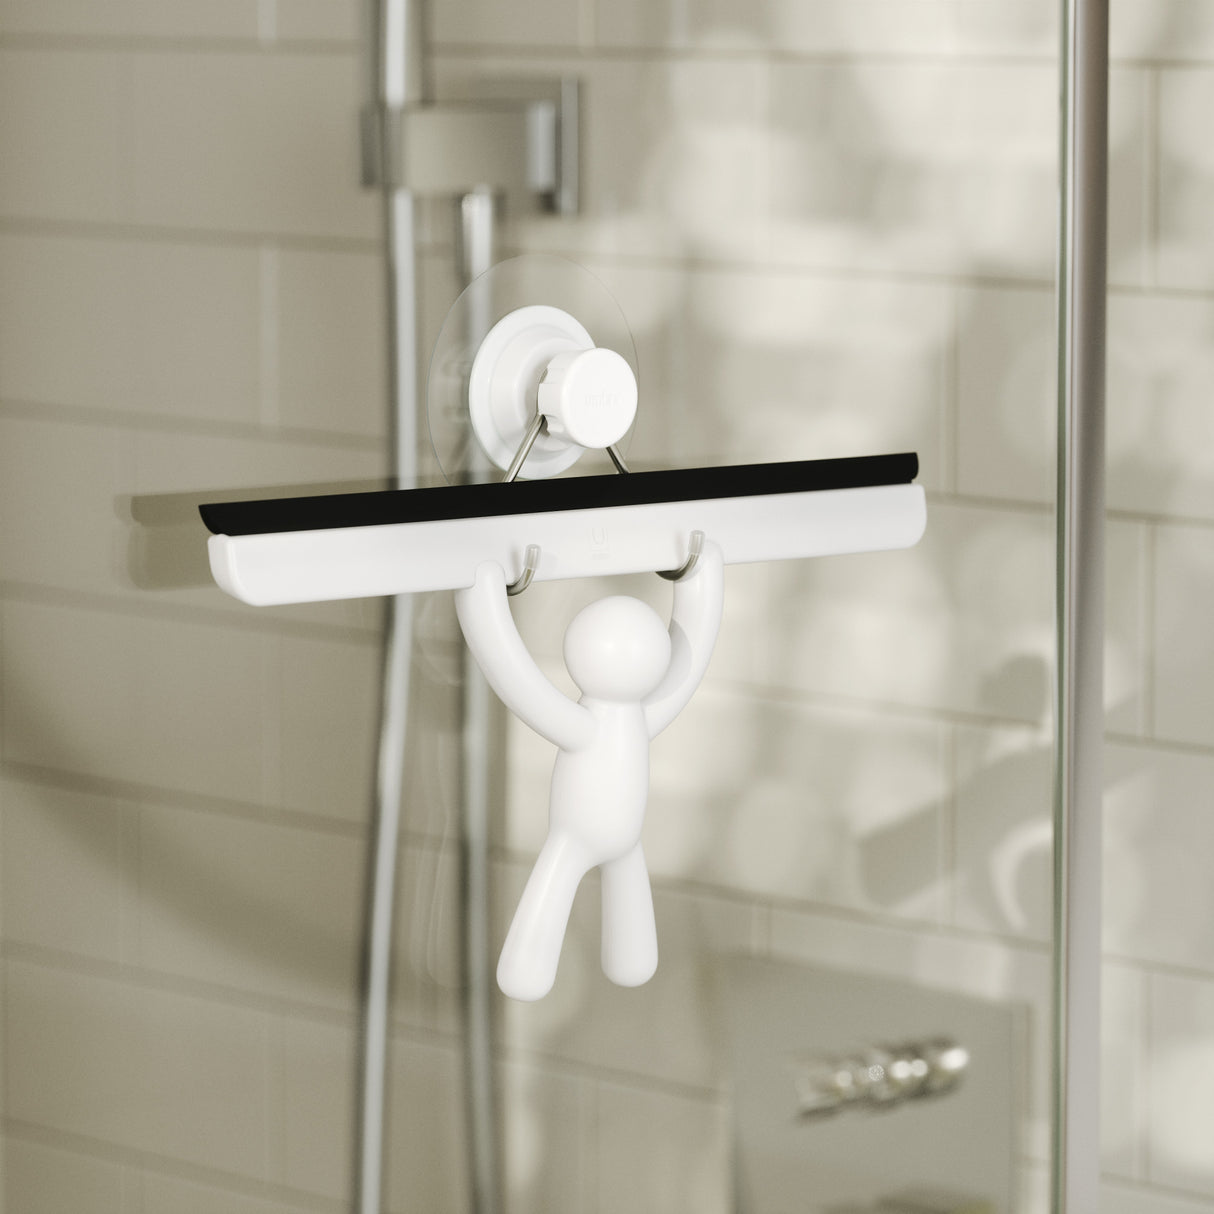 Accessoire de salle de bain - Raclette de douche anti-buée Squeegee 29182